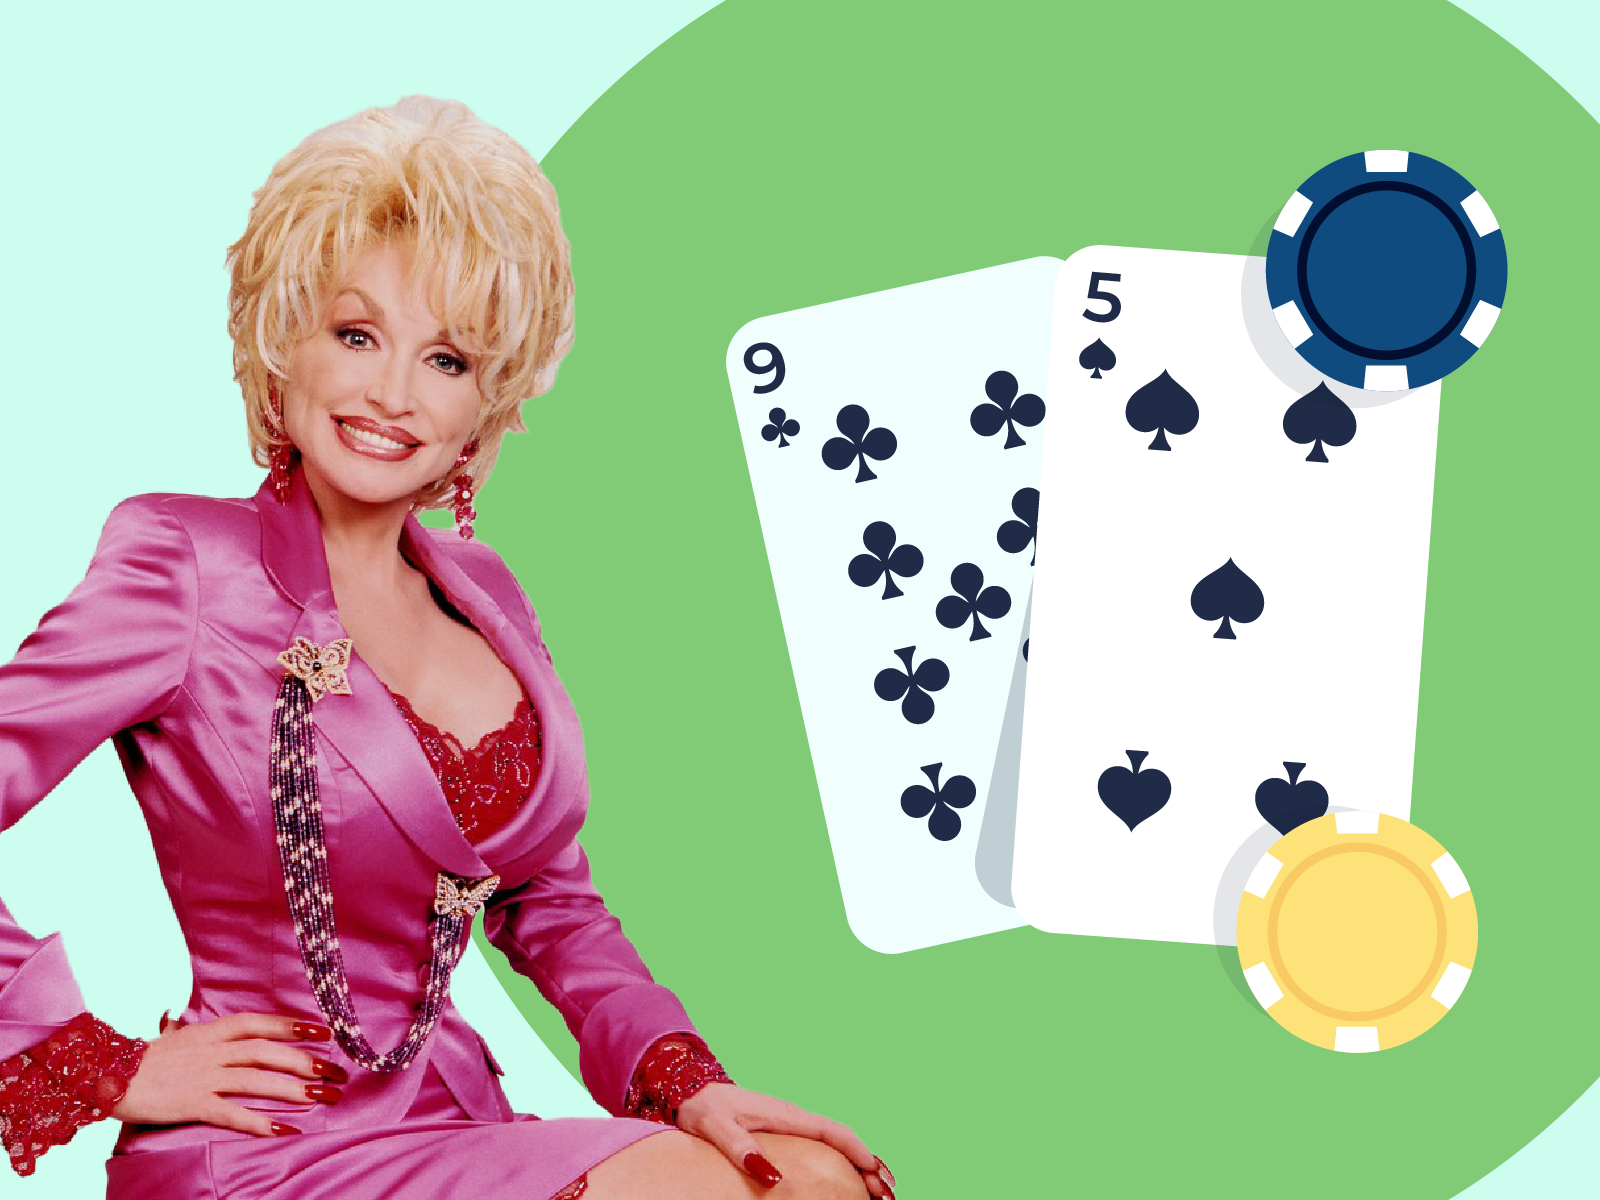 57 Poker Terms And Slang Phrases You Need To Know - Poker Slang